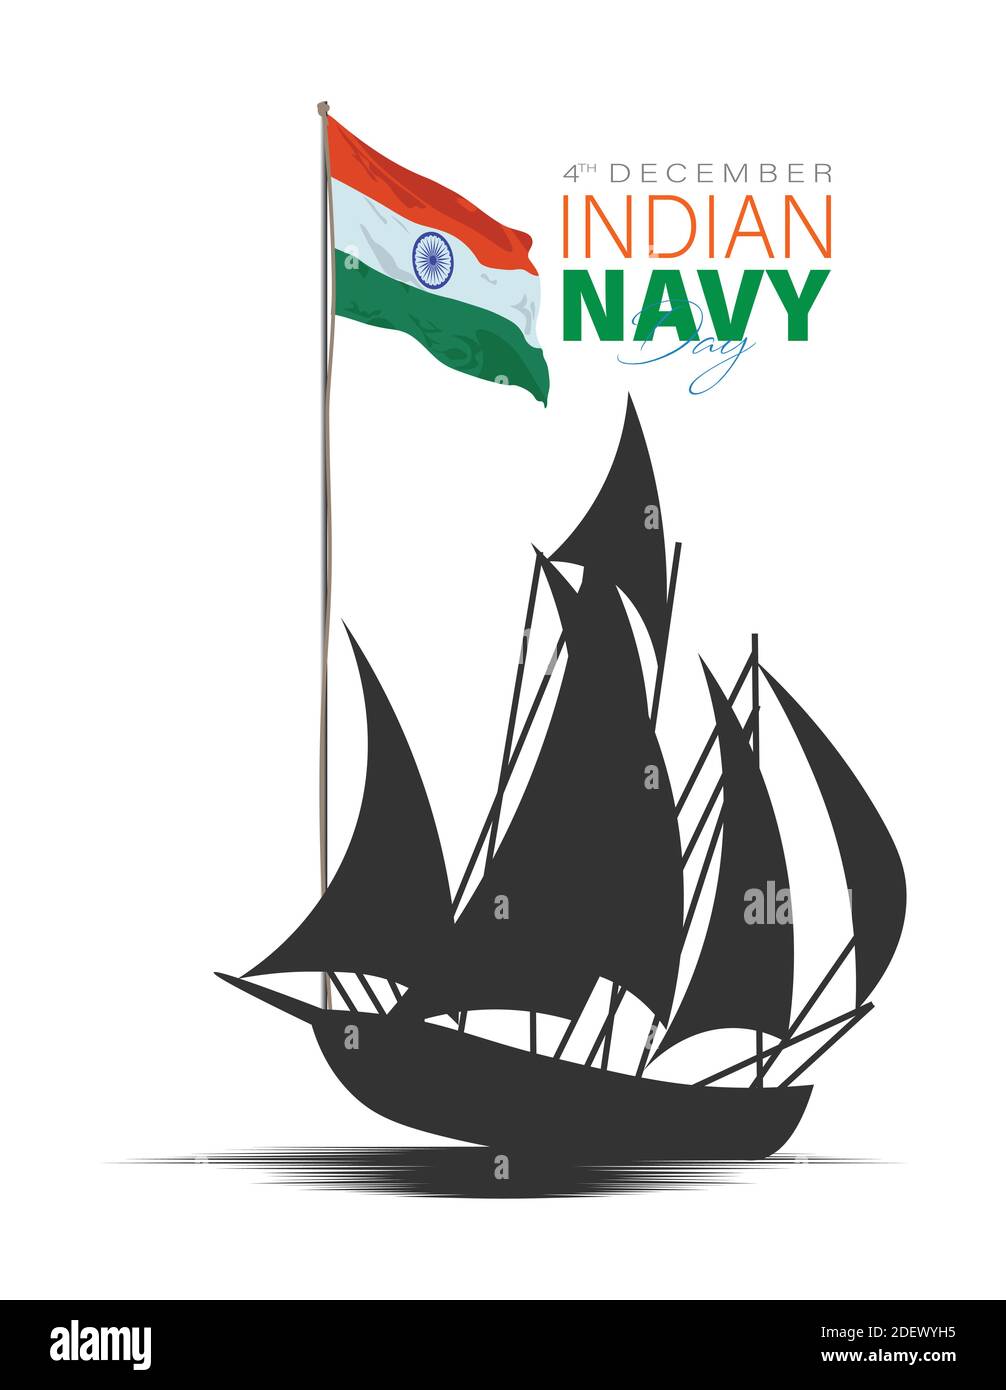 Illustrazione vettoriale del giorno della Marina indiana. 4 dicembre. Salutiamo la Marina indiana in occasione della giornata navale. Illustrazione Vettoriale